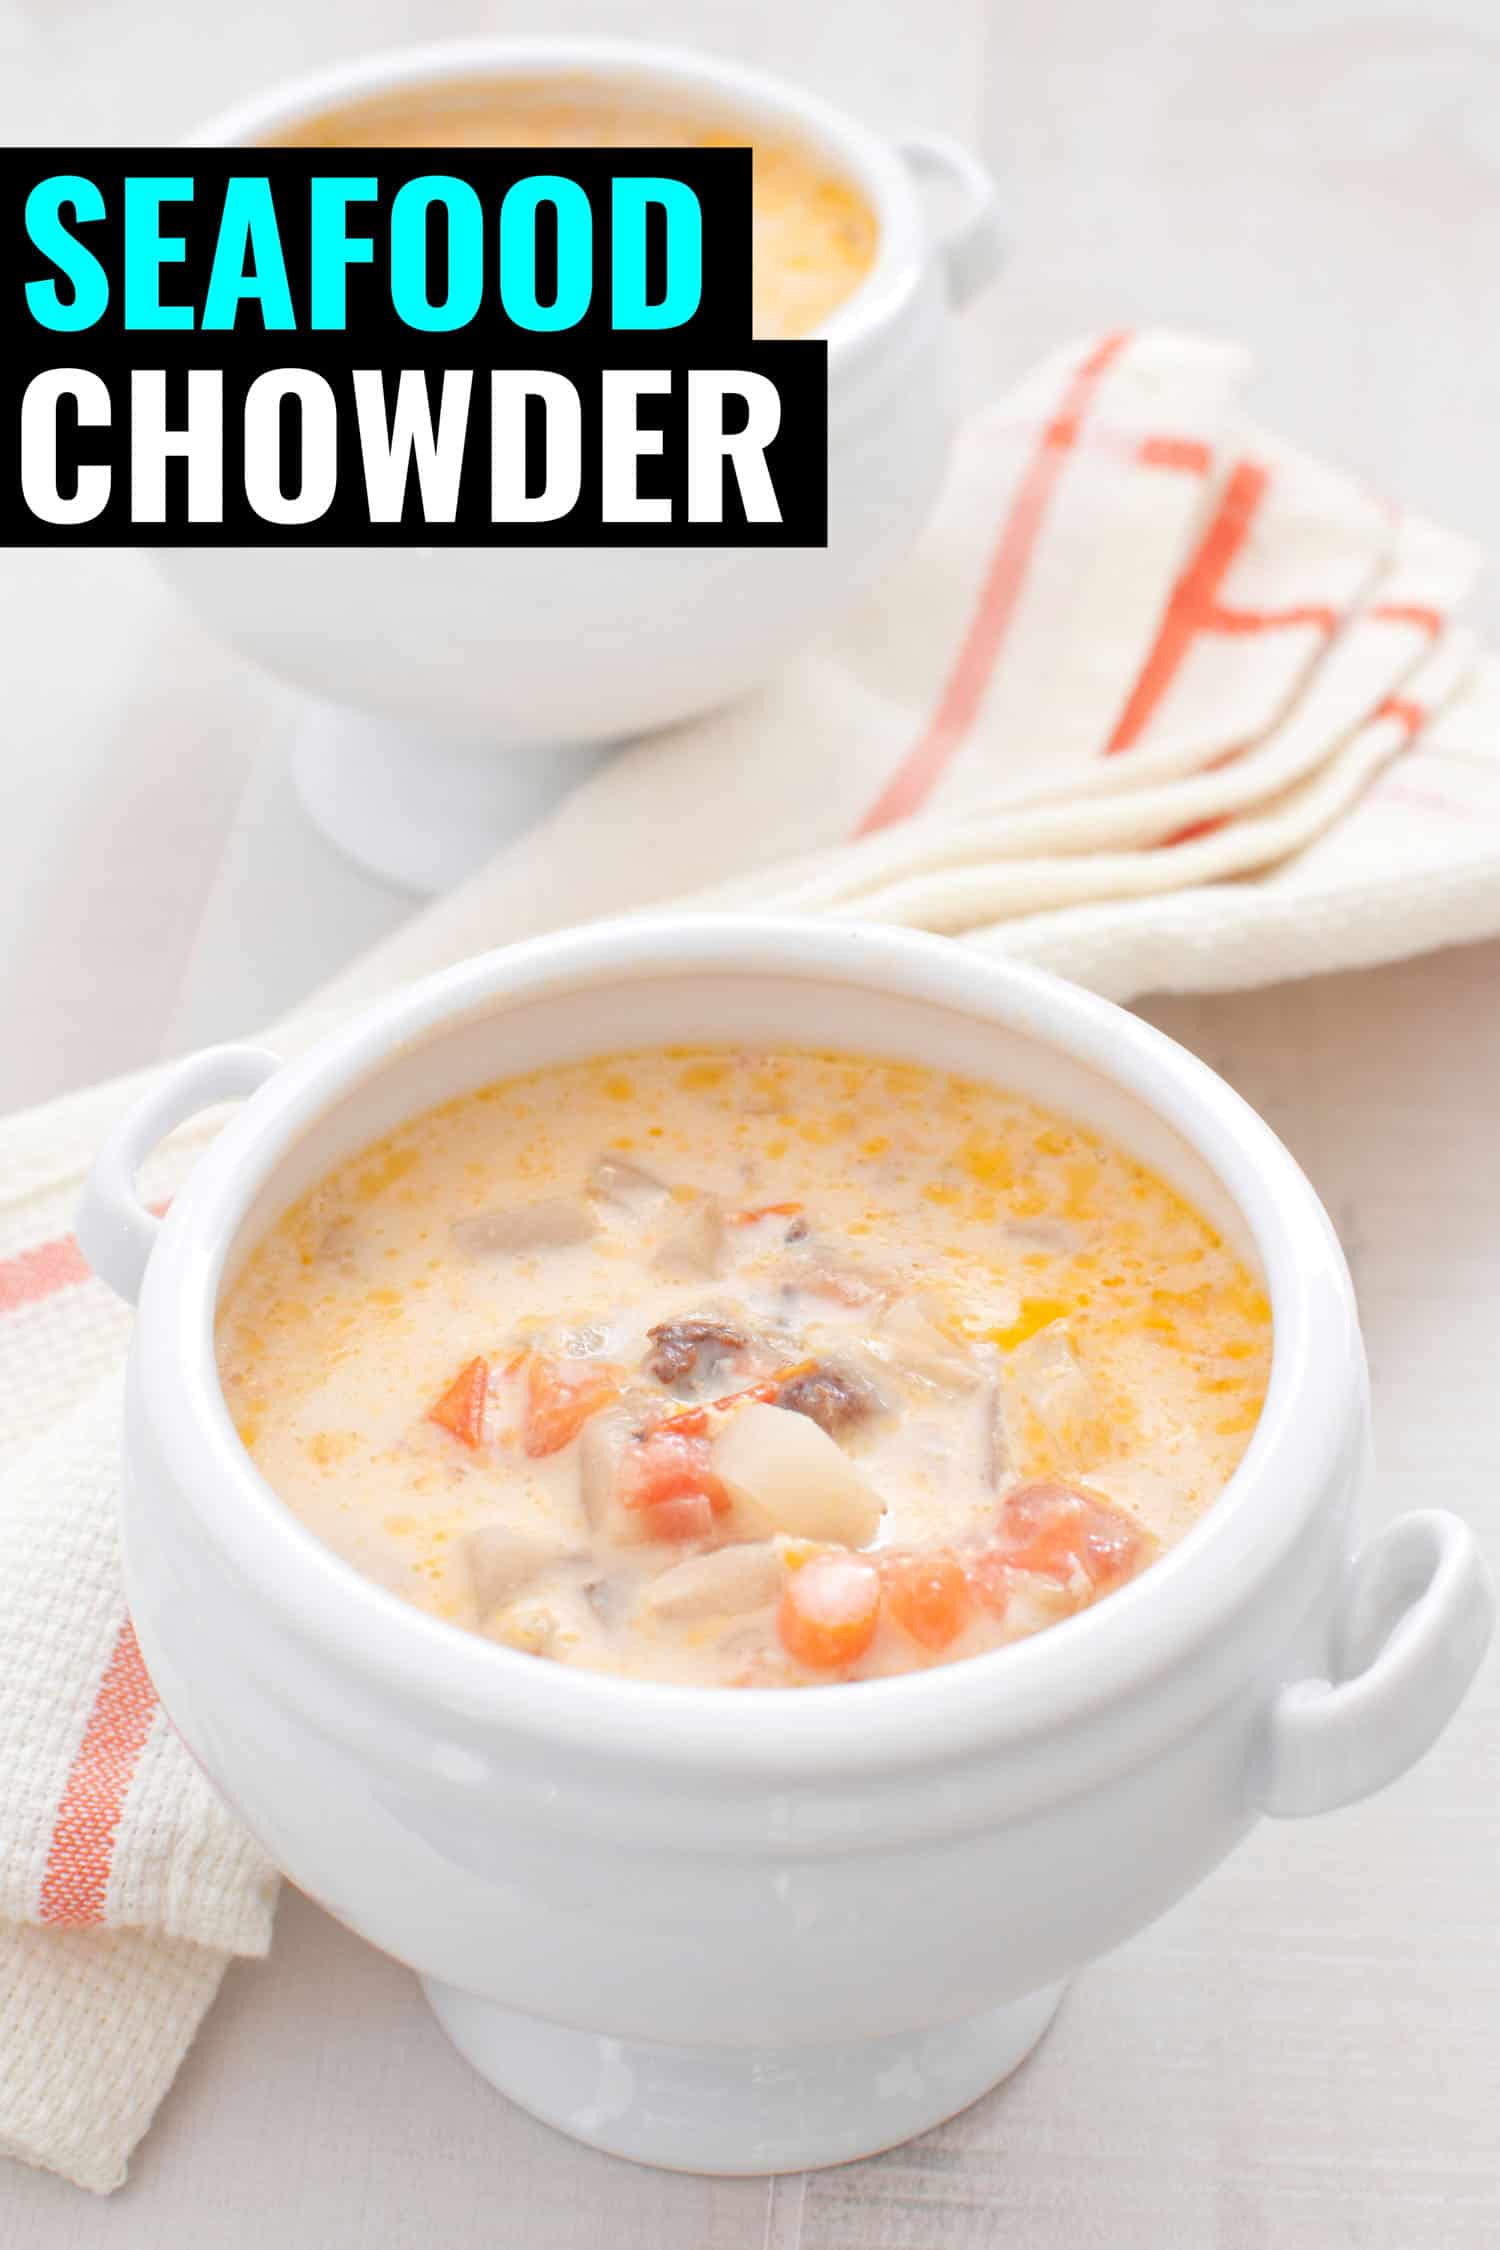 Nova Scotia creamy seafood chowder in a white bowl.